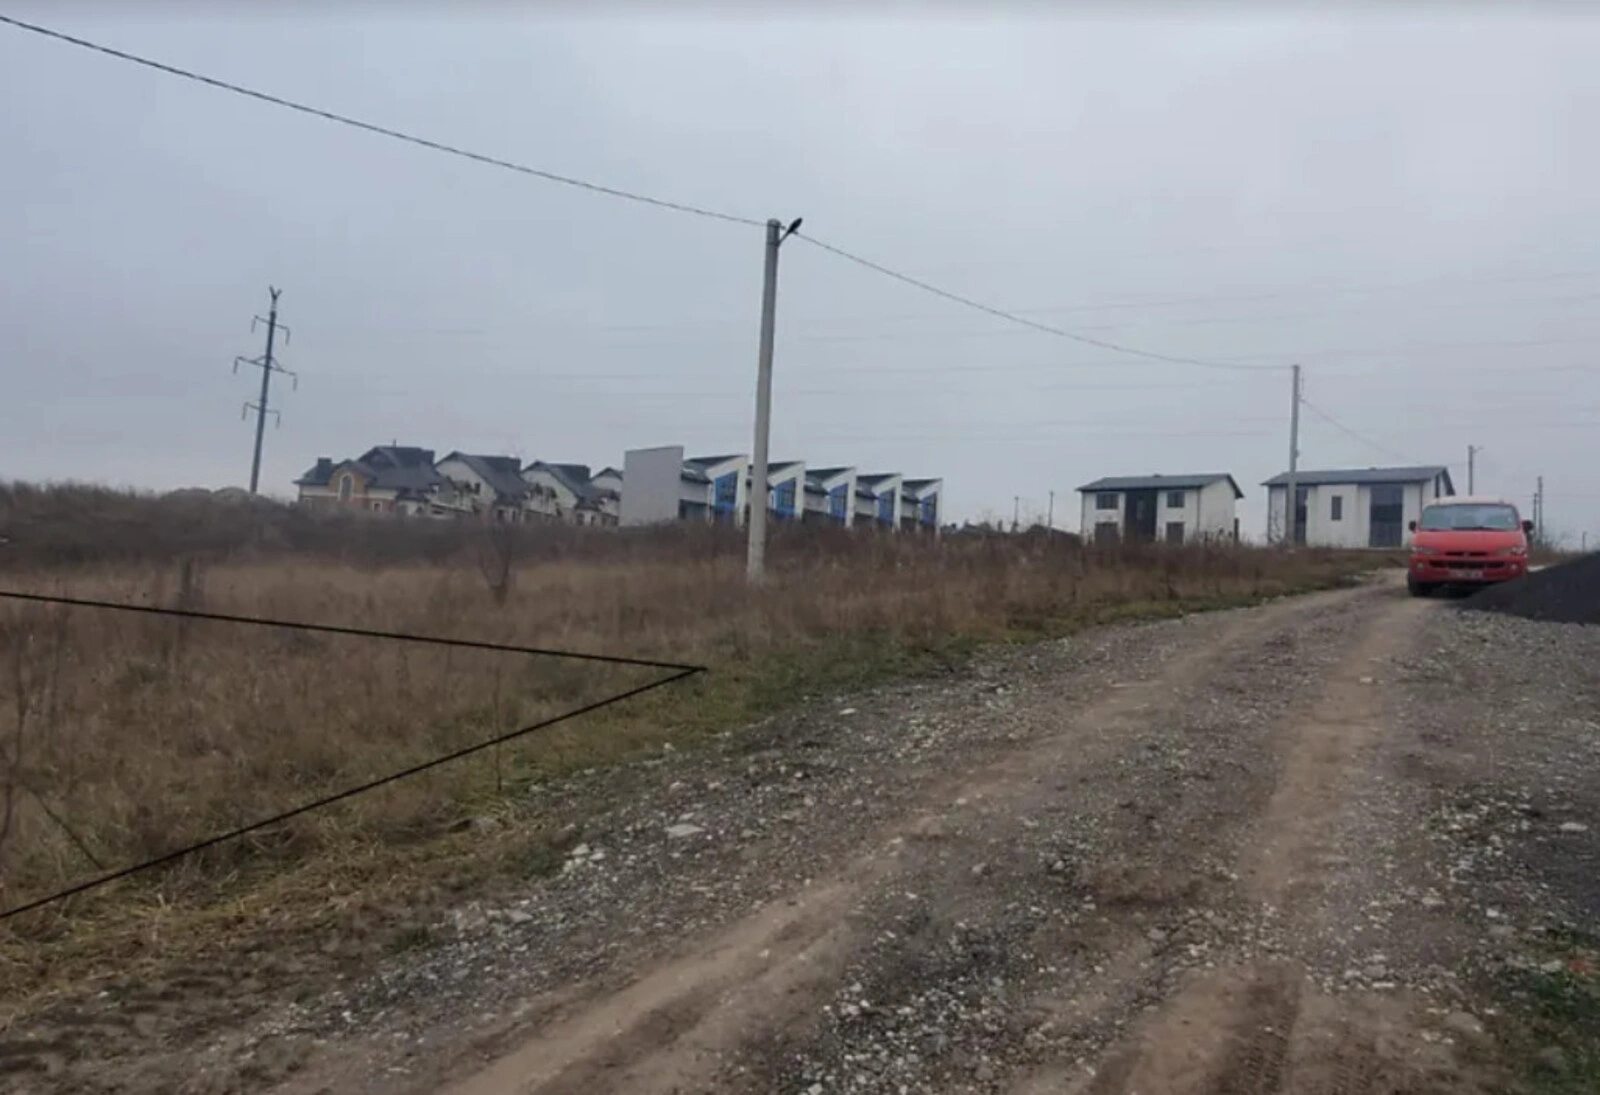 Land for sale for residential construction. Sonyachnyy, Baykovtsy. 